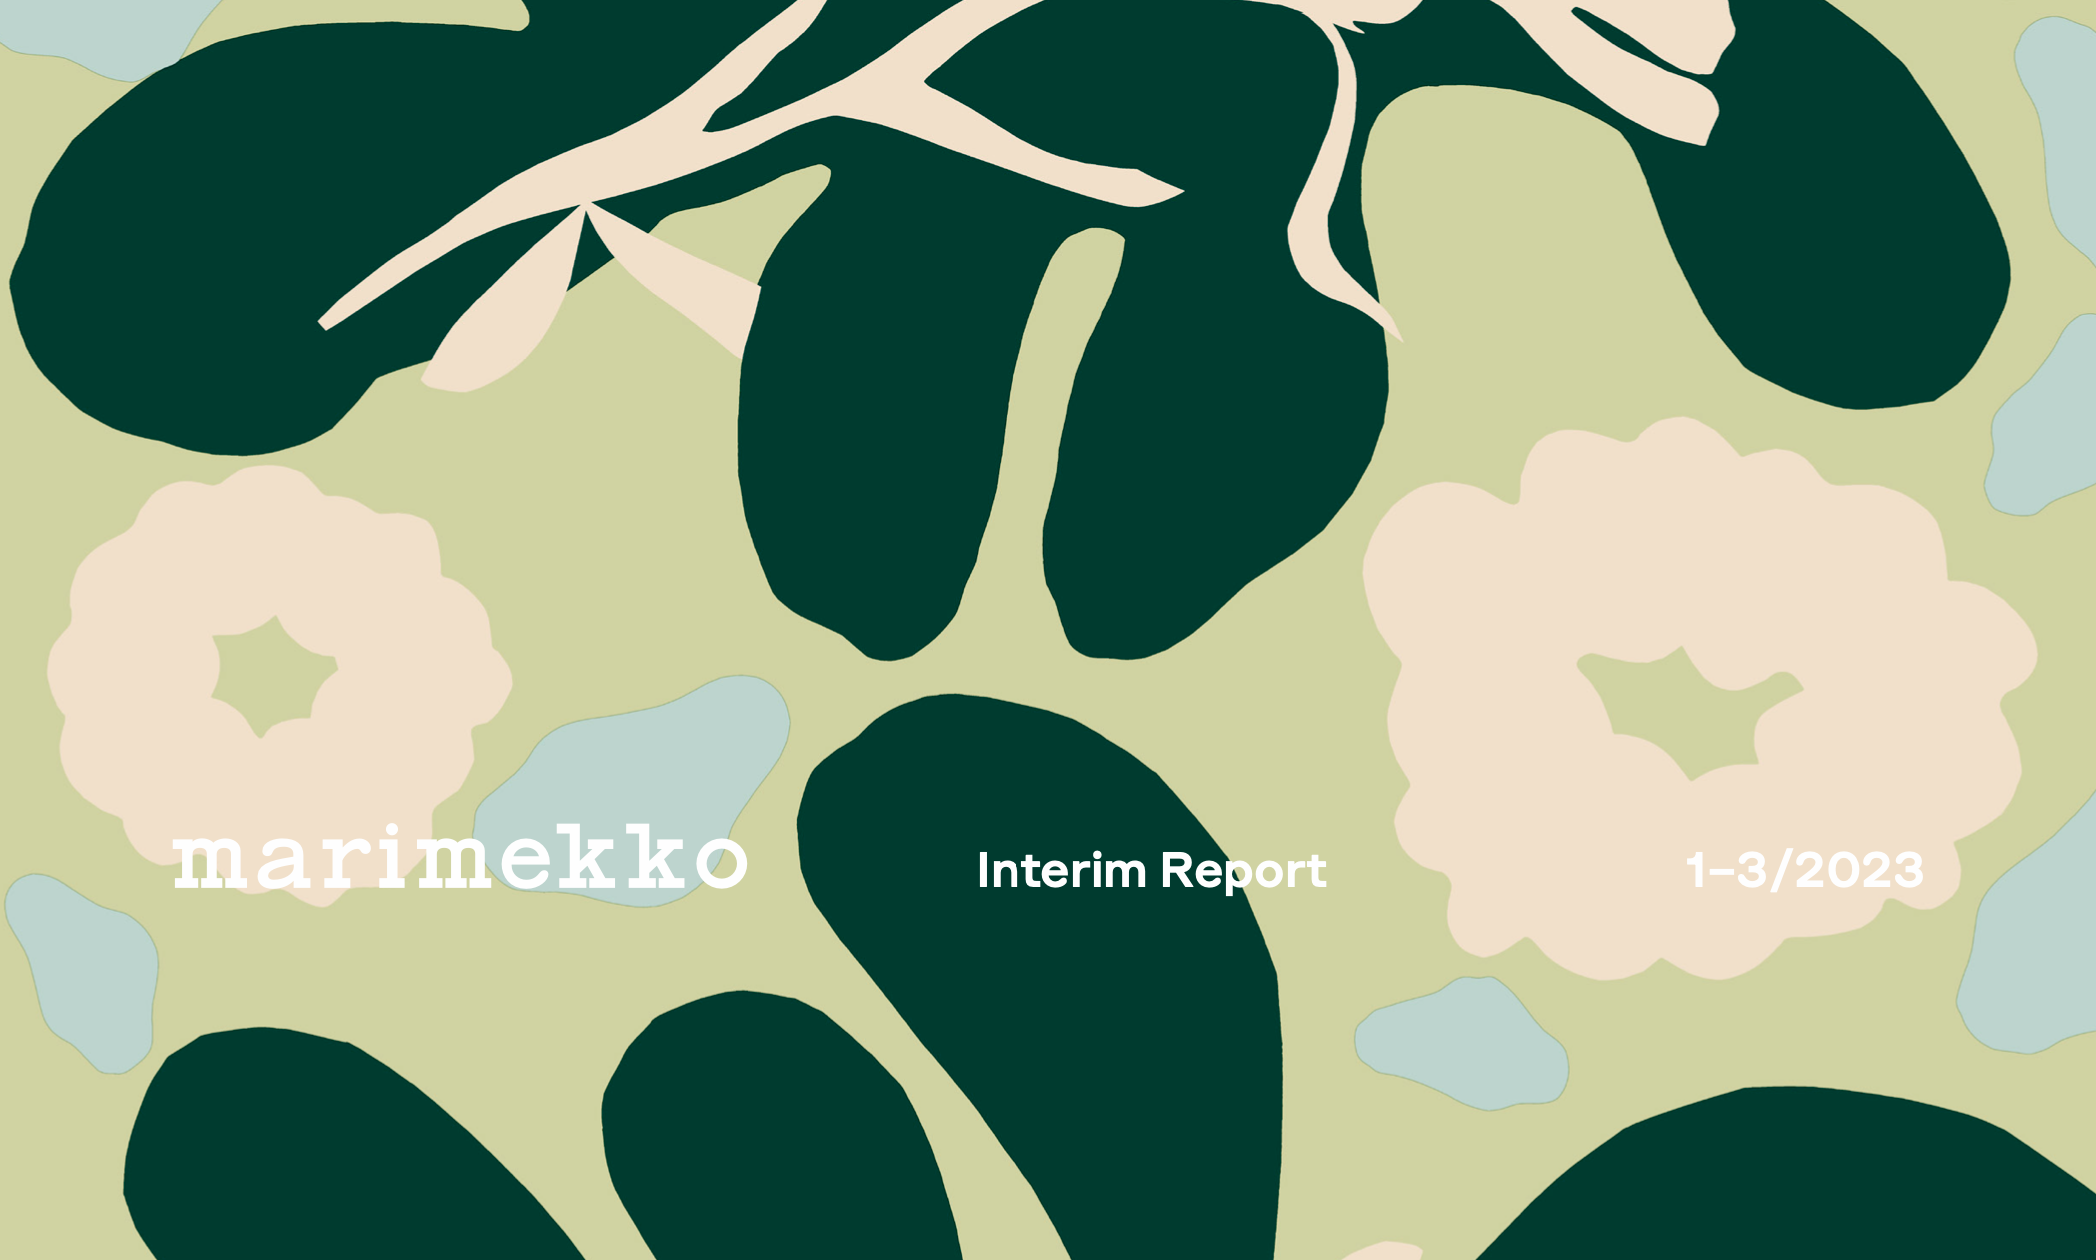 芬兰时尚品牌Marimekko一季度净销售额3530万欧元，计划重点发展亚洲市场